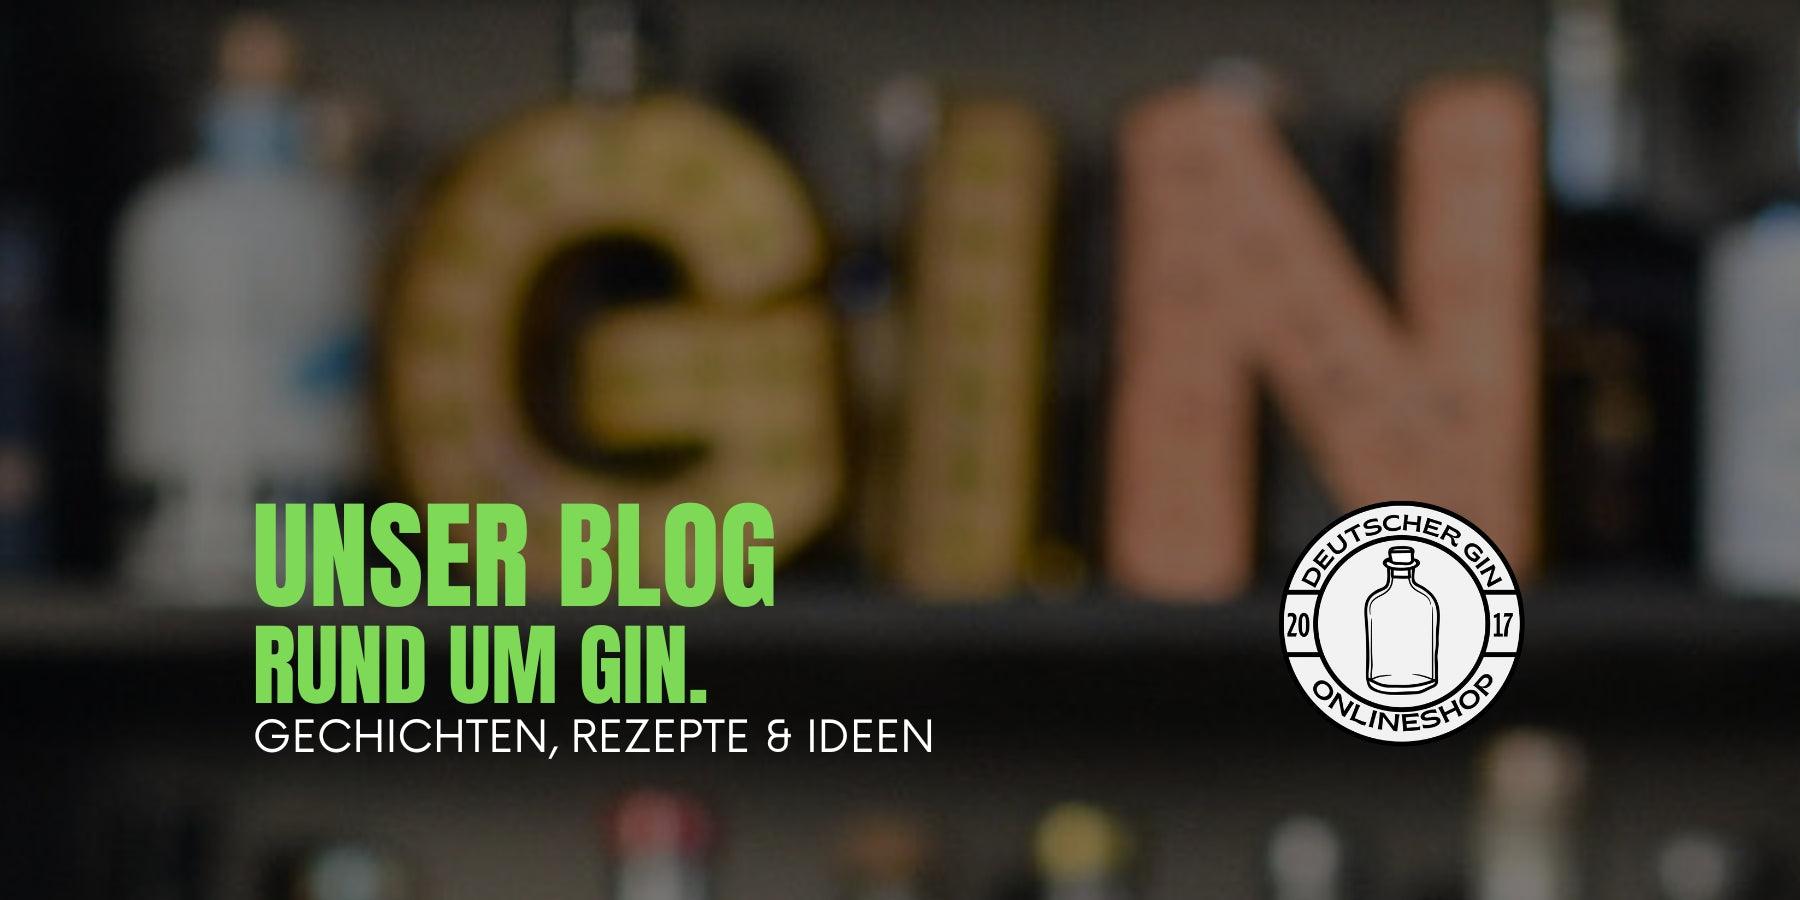 All about Gin. - Deutschergin.de